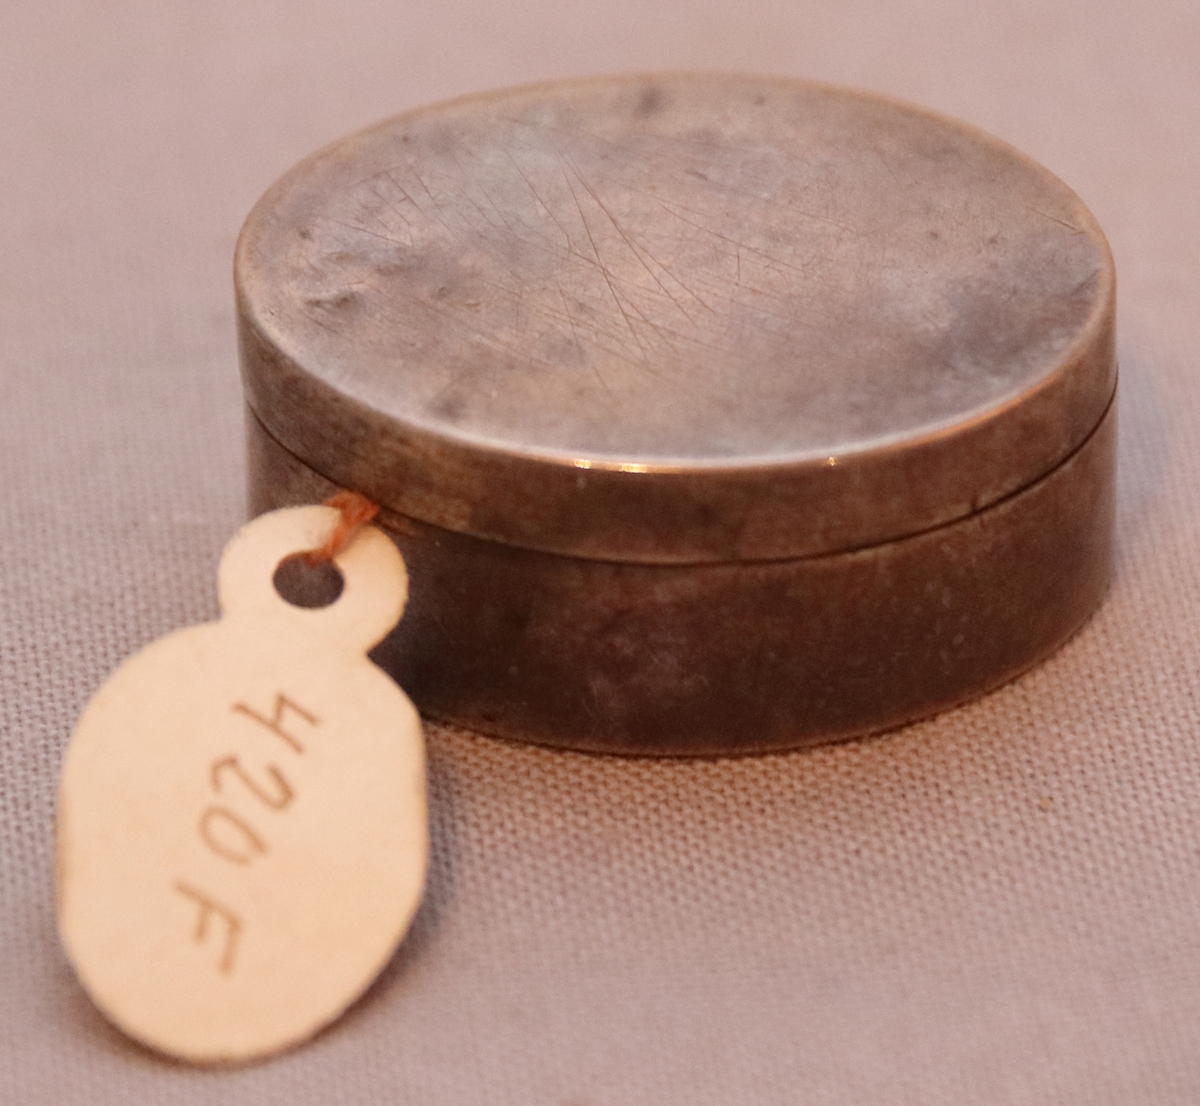 Oval  svampdosa av silver. Med avtagbart lock. Slät utan dekor. Stämplarna:  G.T.  R3 (år 1823), B, Halmstads stadsstämpel.